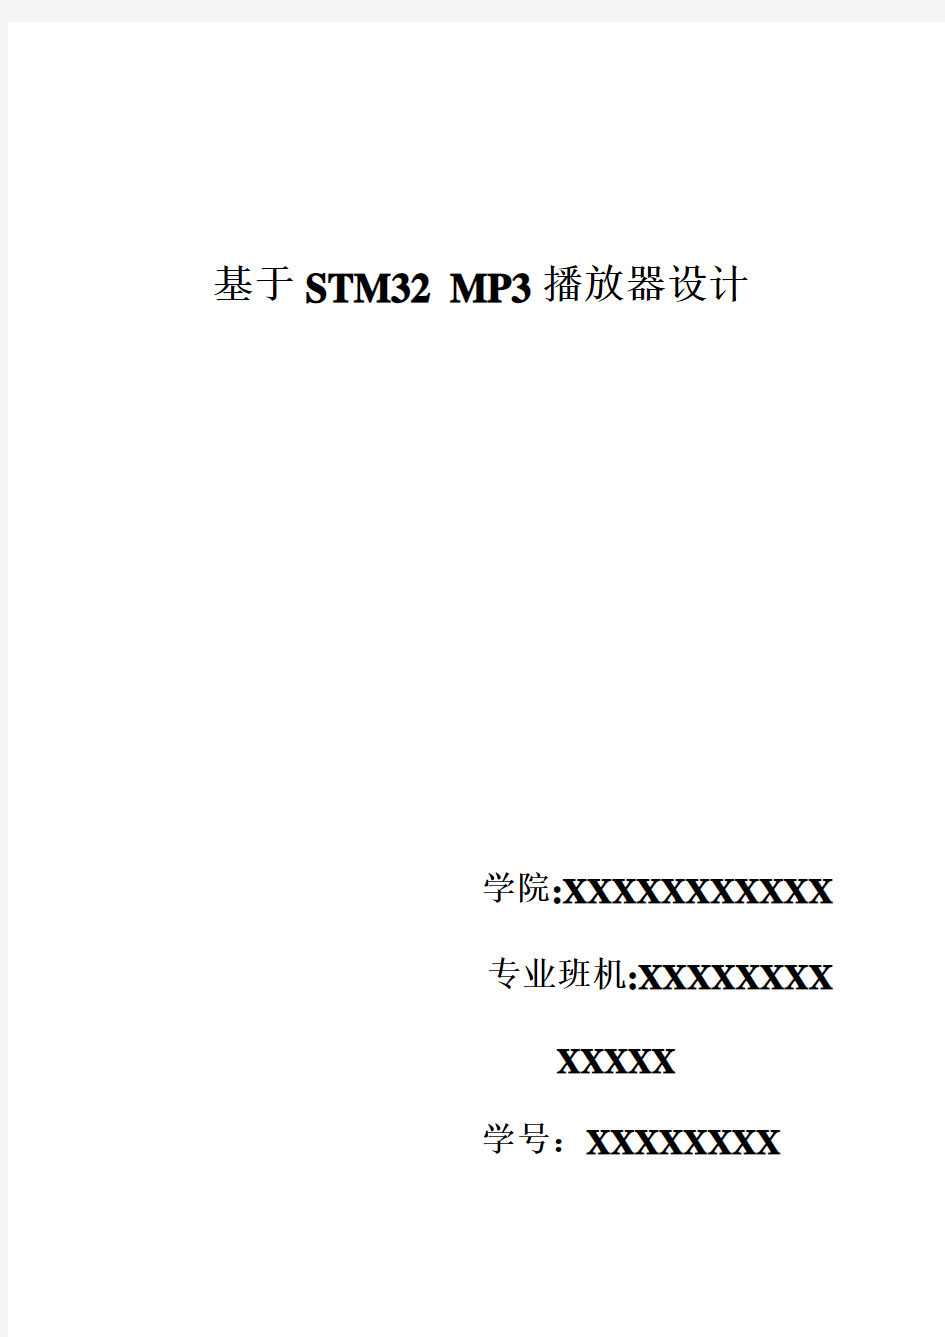 基于STM32-MP3播放器设计说明